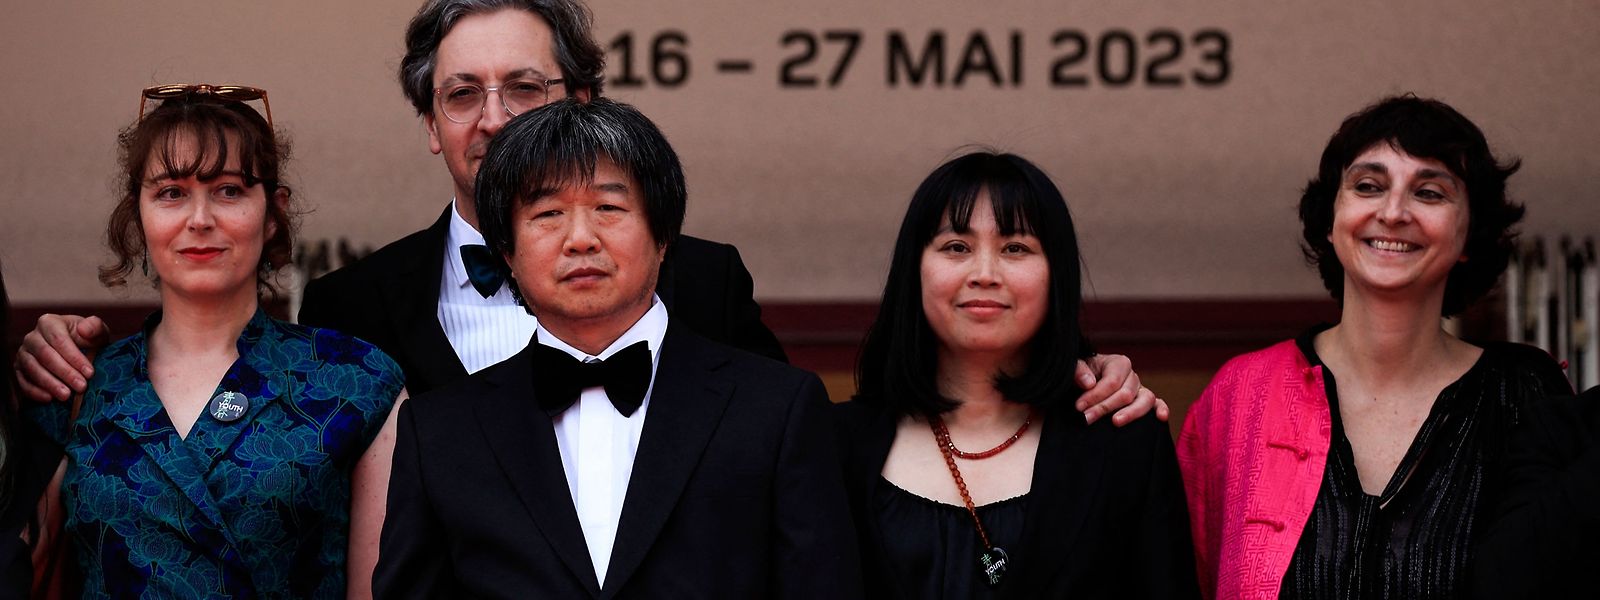 Der chinesische Regisseur Wang Bing (3.v.r.) bei der Weltpremiere seines Dokumentarfilms "Youth - Spring" bei der Premiere am 18. Mai 2023 in Cannes. 